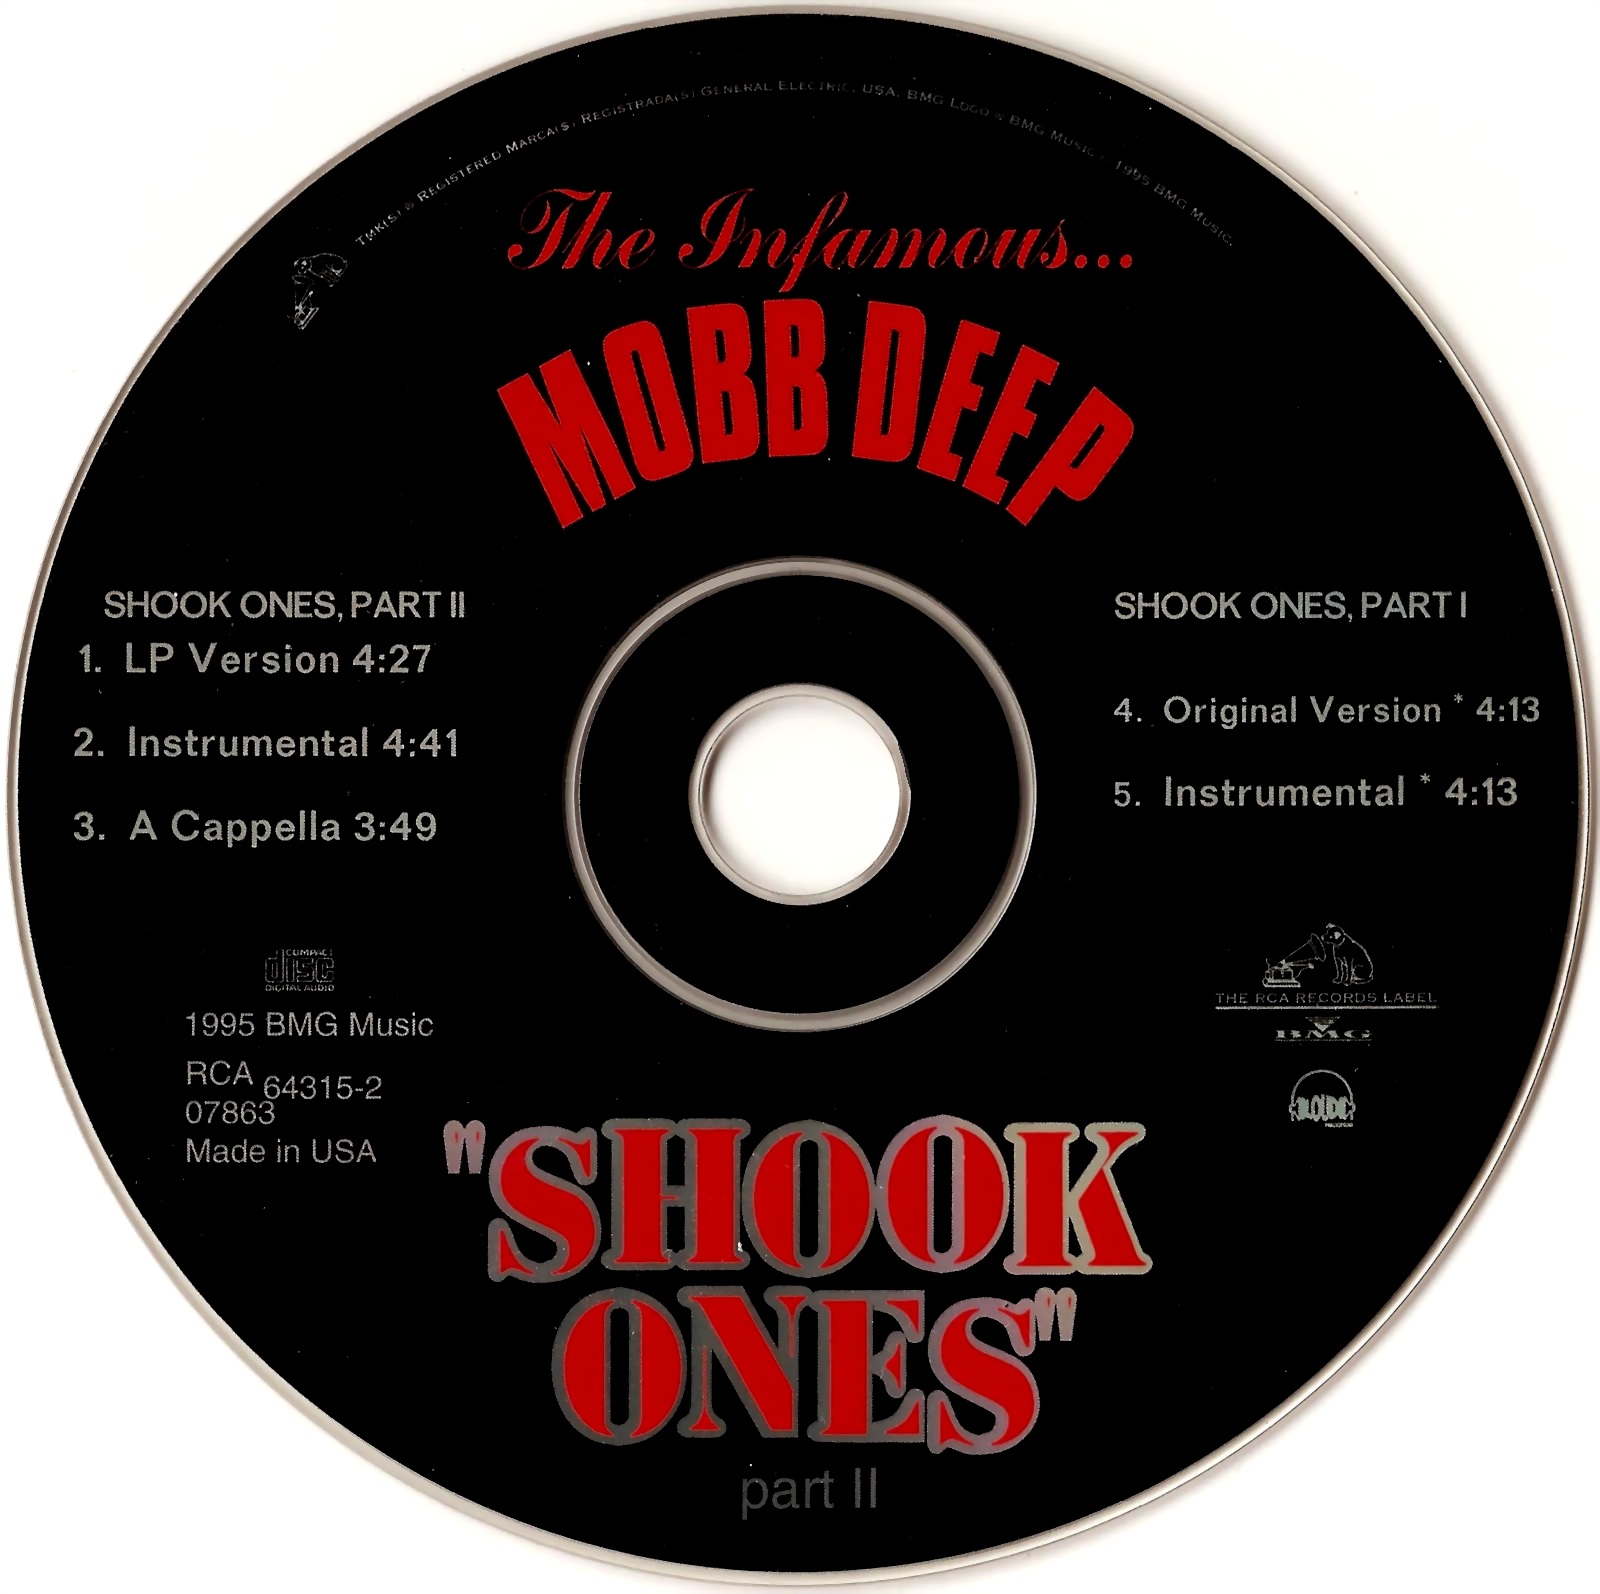 Mobb deep shook ones pt. Shook ones pt 2. Mobb Deep Shook ones pt 2. Shook ones, pt. II Mobb Deep. One Shock.